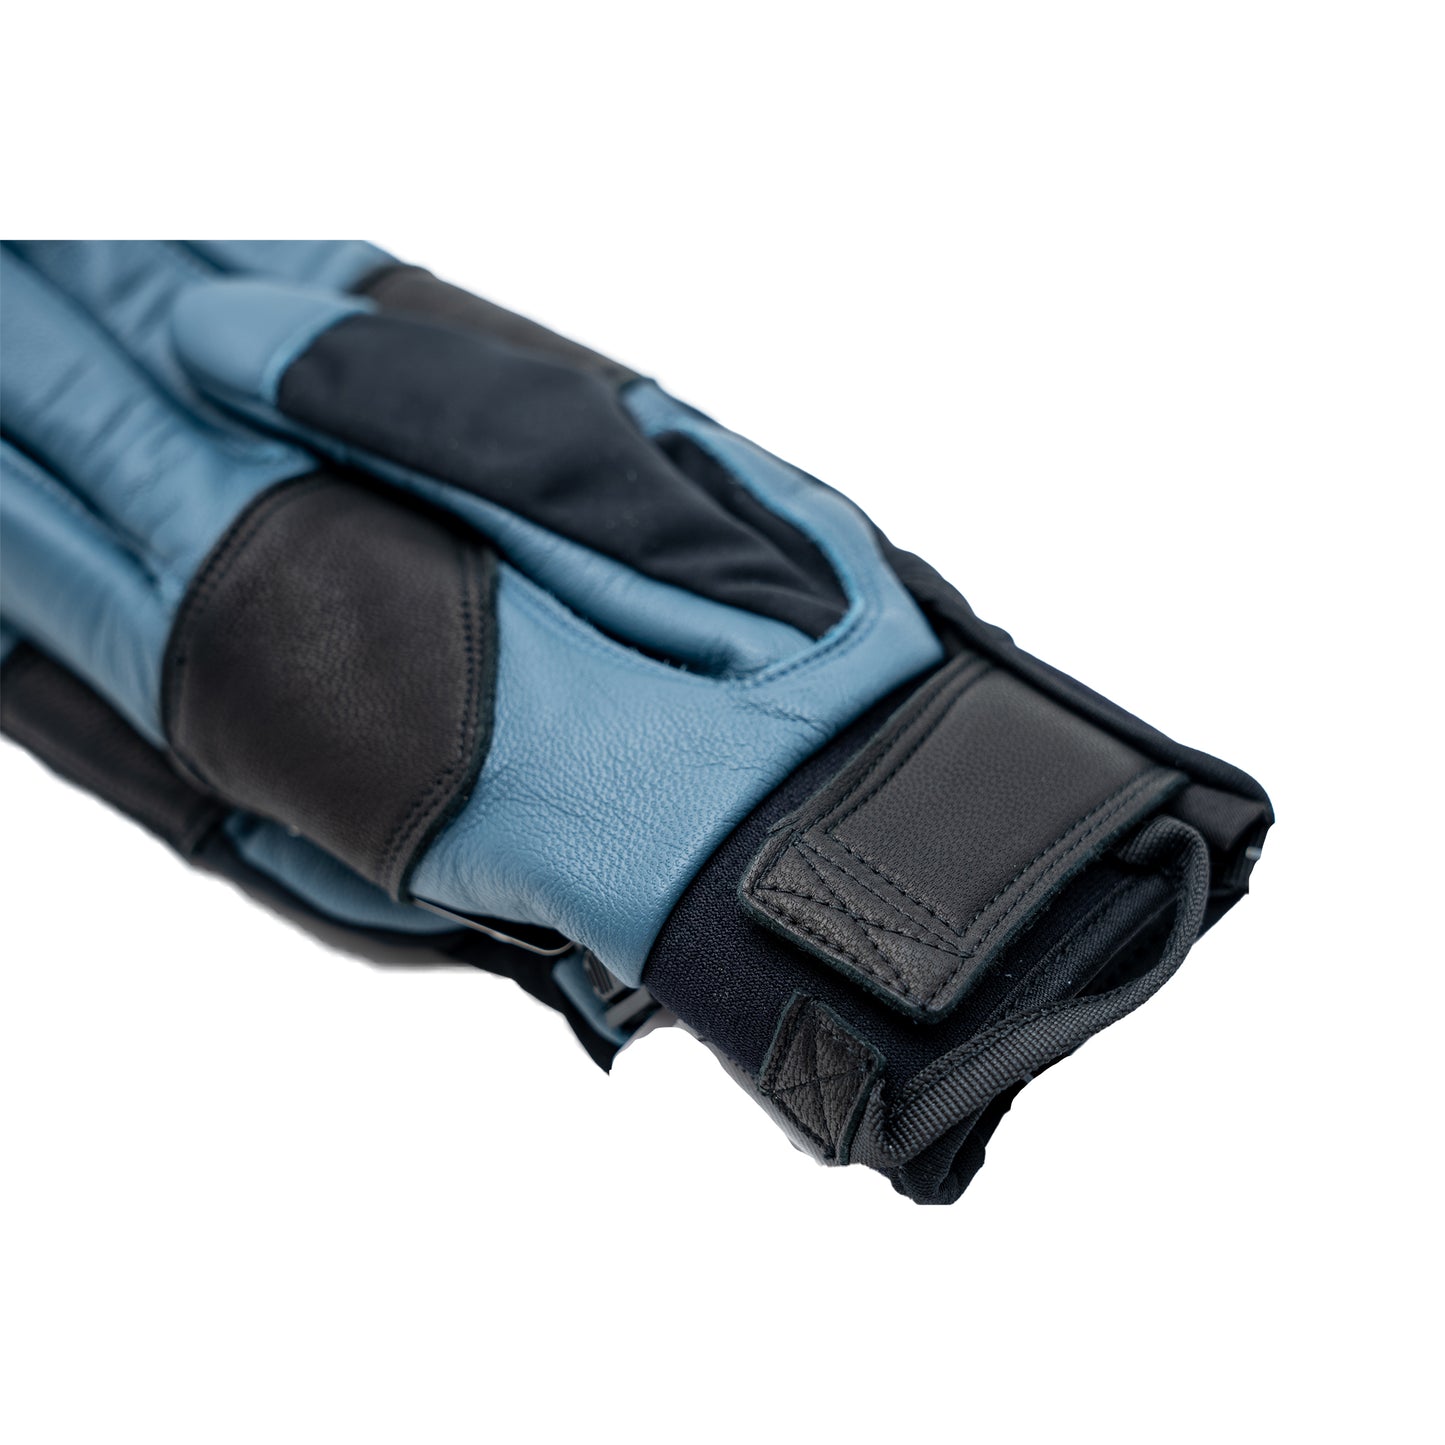 SX-206 Spring Glove